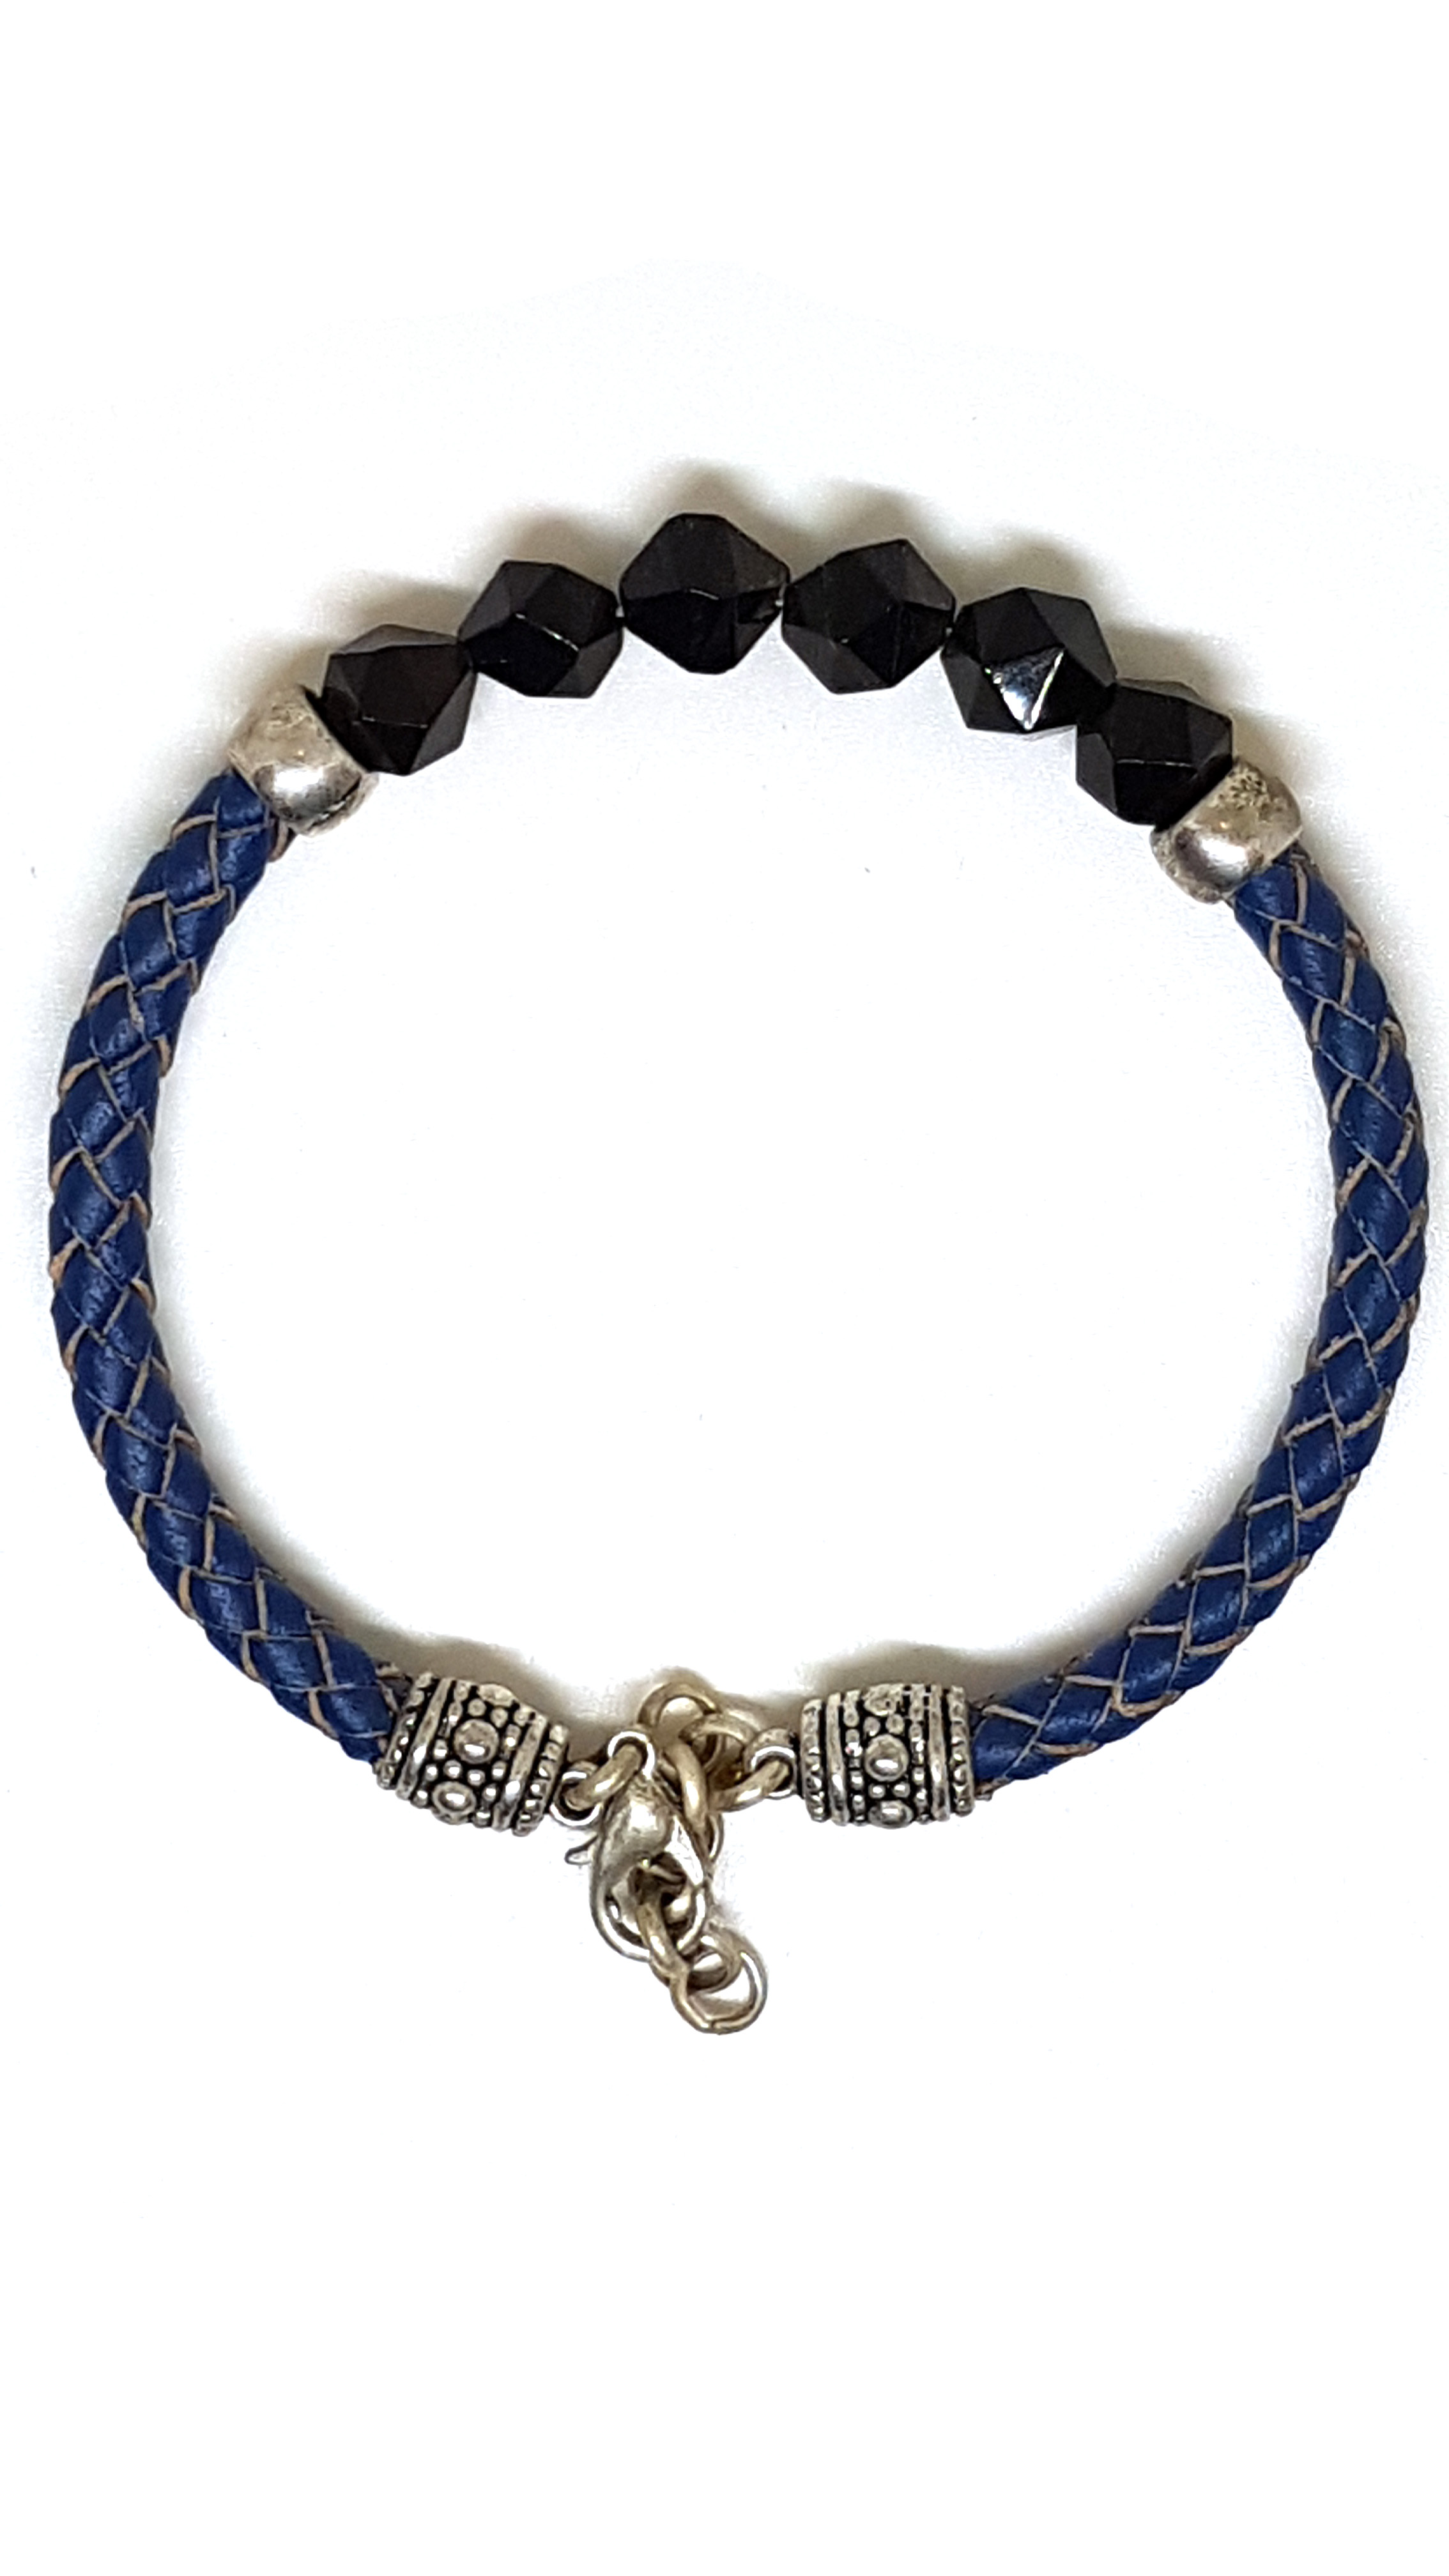 Armband aus echt Leder mit echten Onyx Steinen von Lanzarote (Handarbeit)